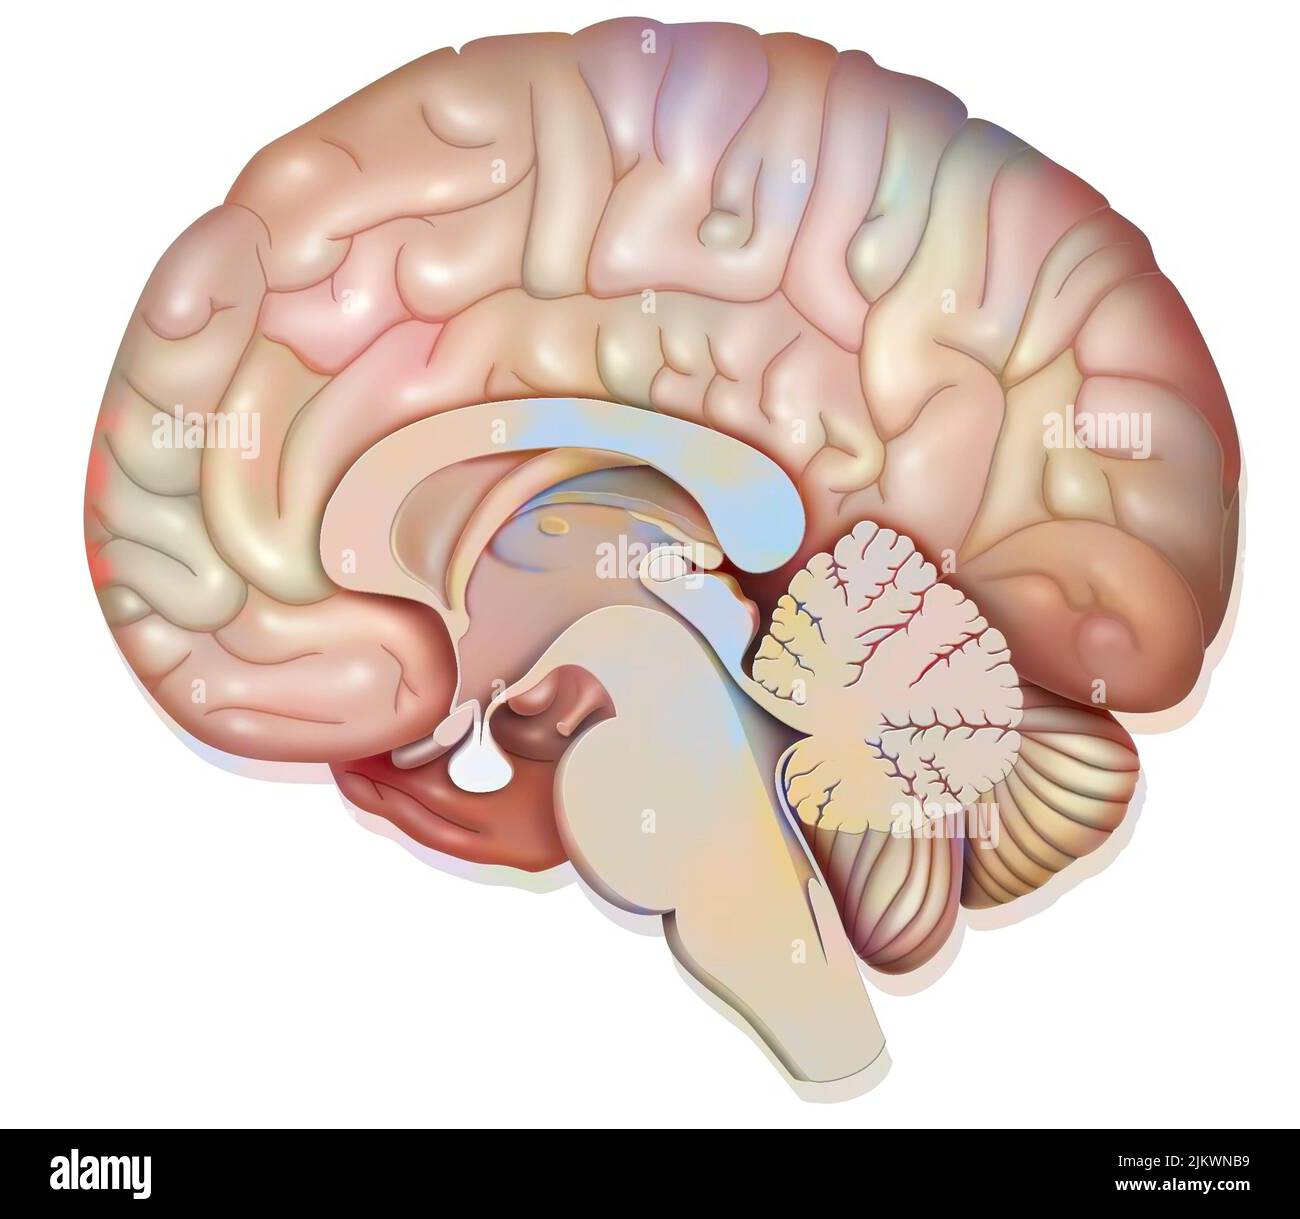 Sezione sagittale mediana del cervello umano che mostra la ghiandola pituitaria. Foto Stock